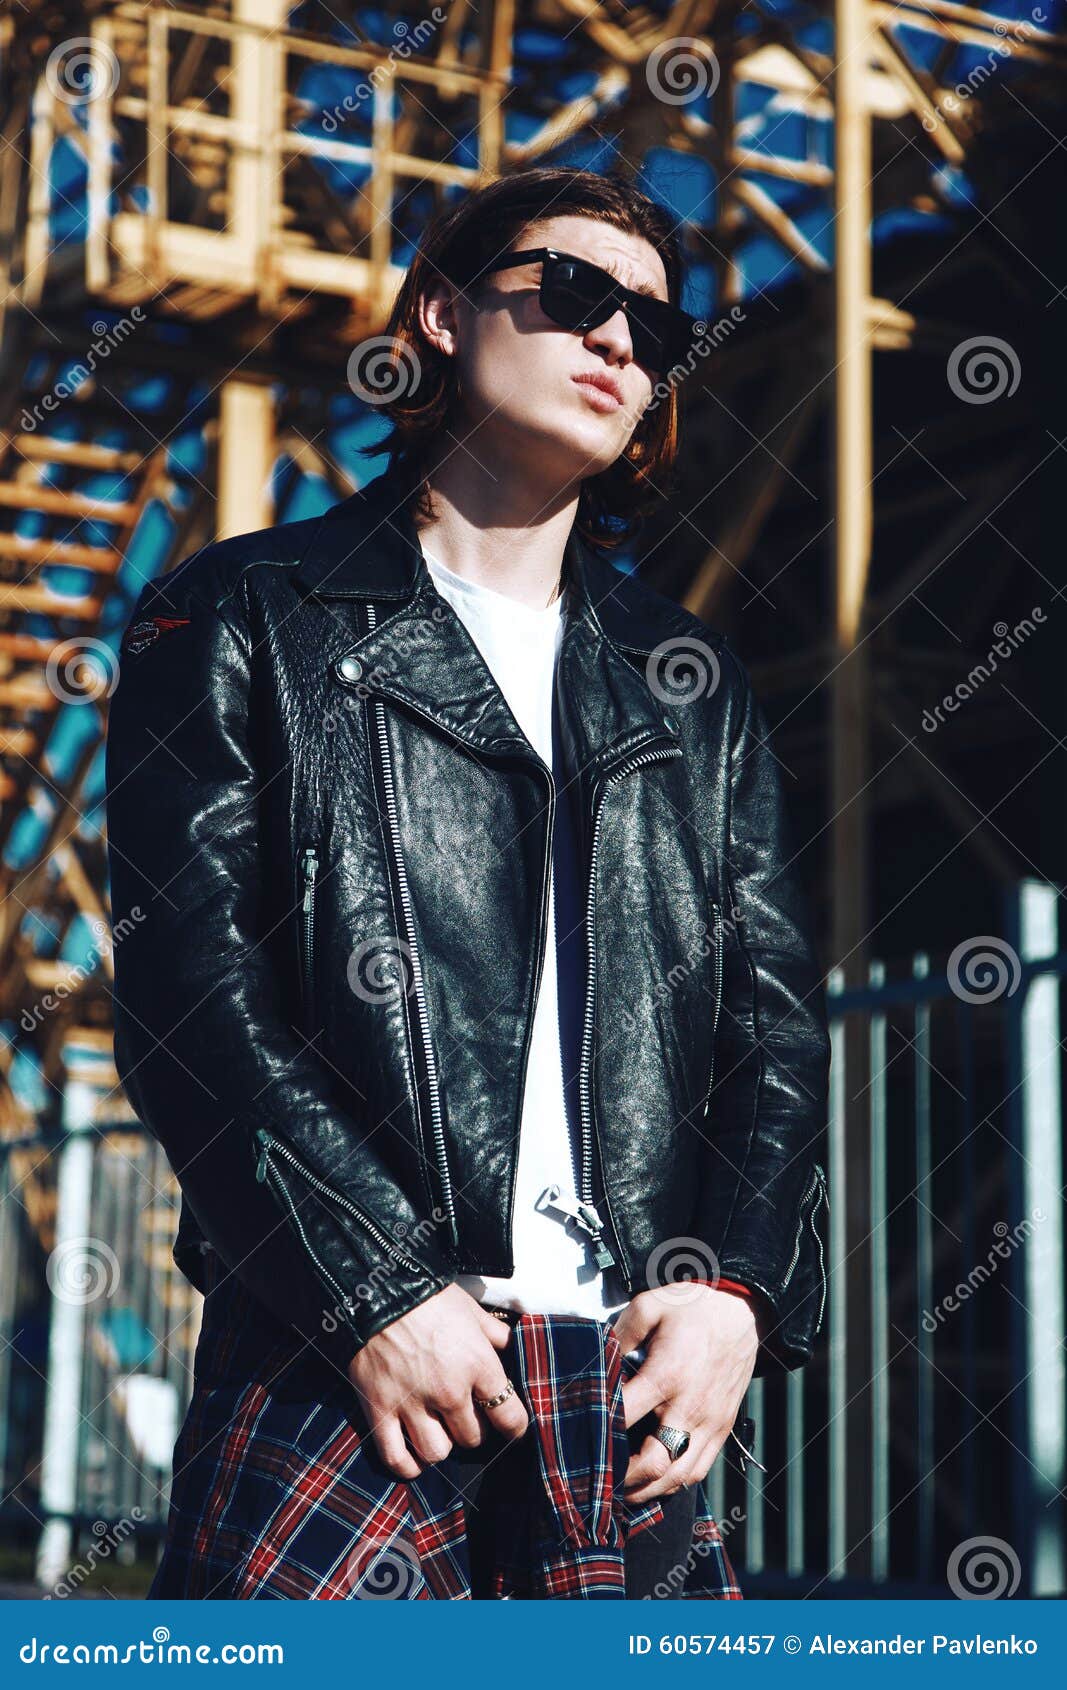 Grunge Boy Hair in Black to White